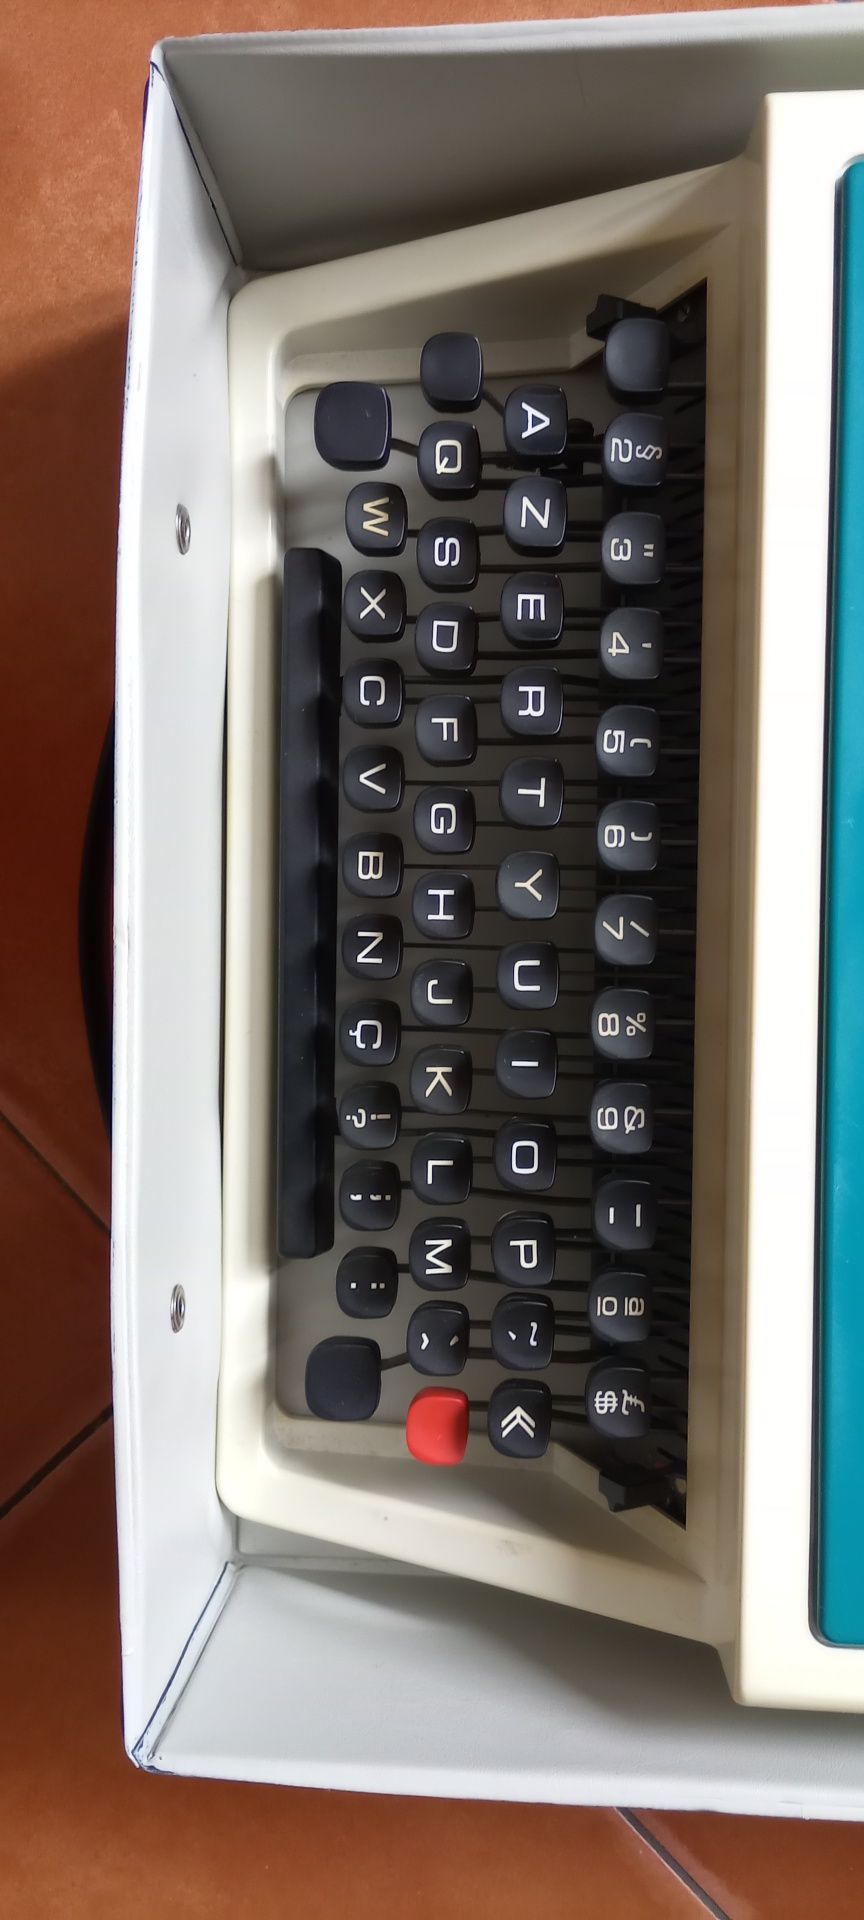 Máquina de escrever Olivetti